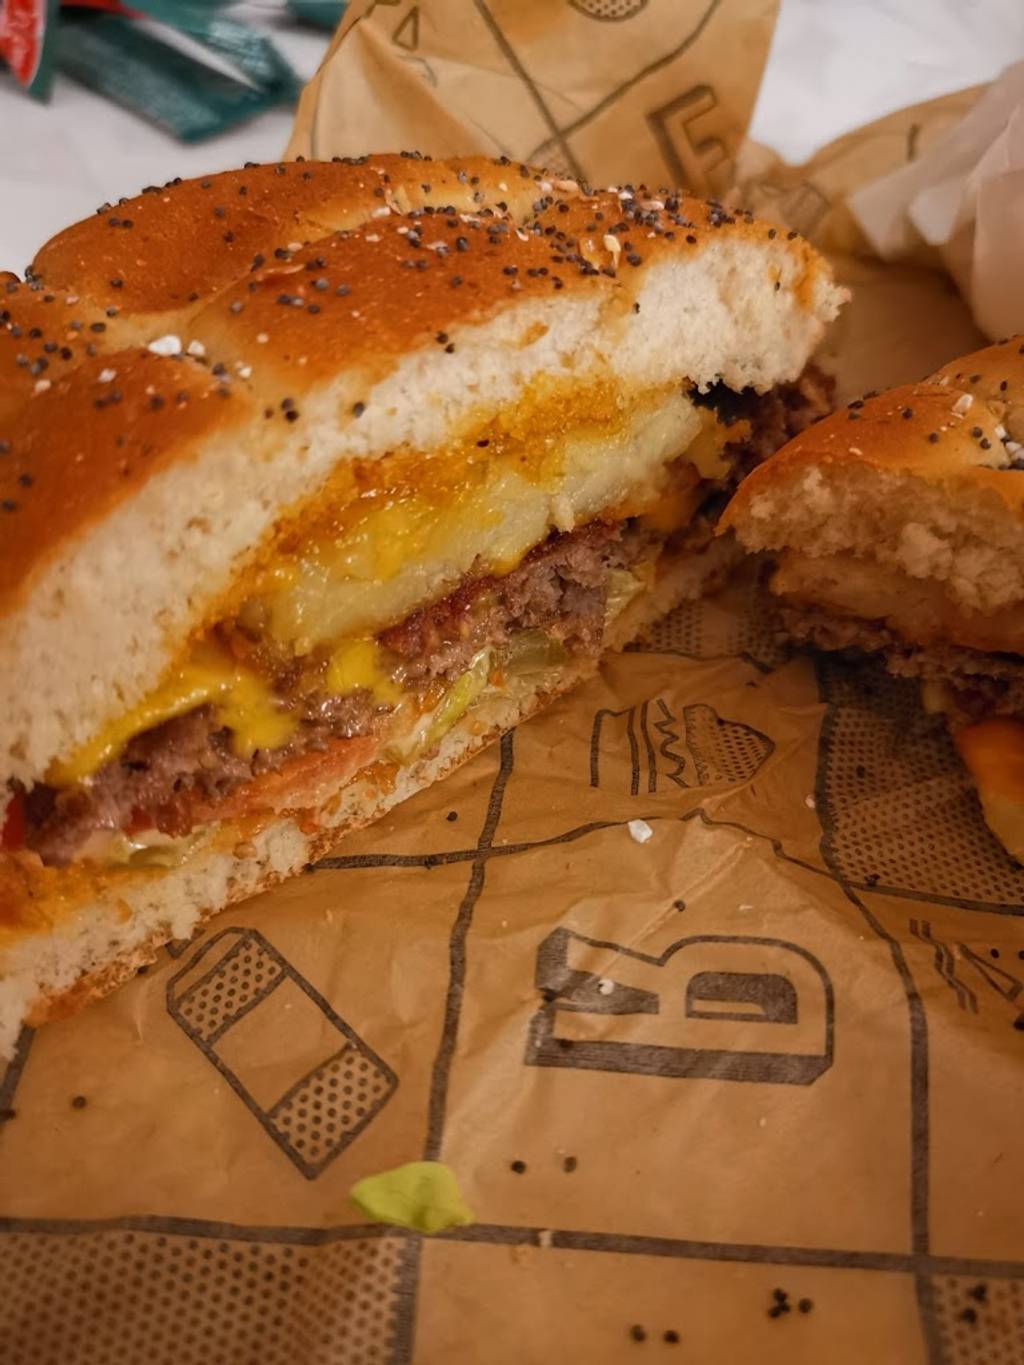 L'instant Burger Les Mureaux - Food Tableware Sandwich Recipe Patty melt